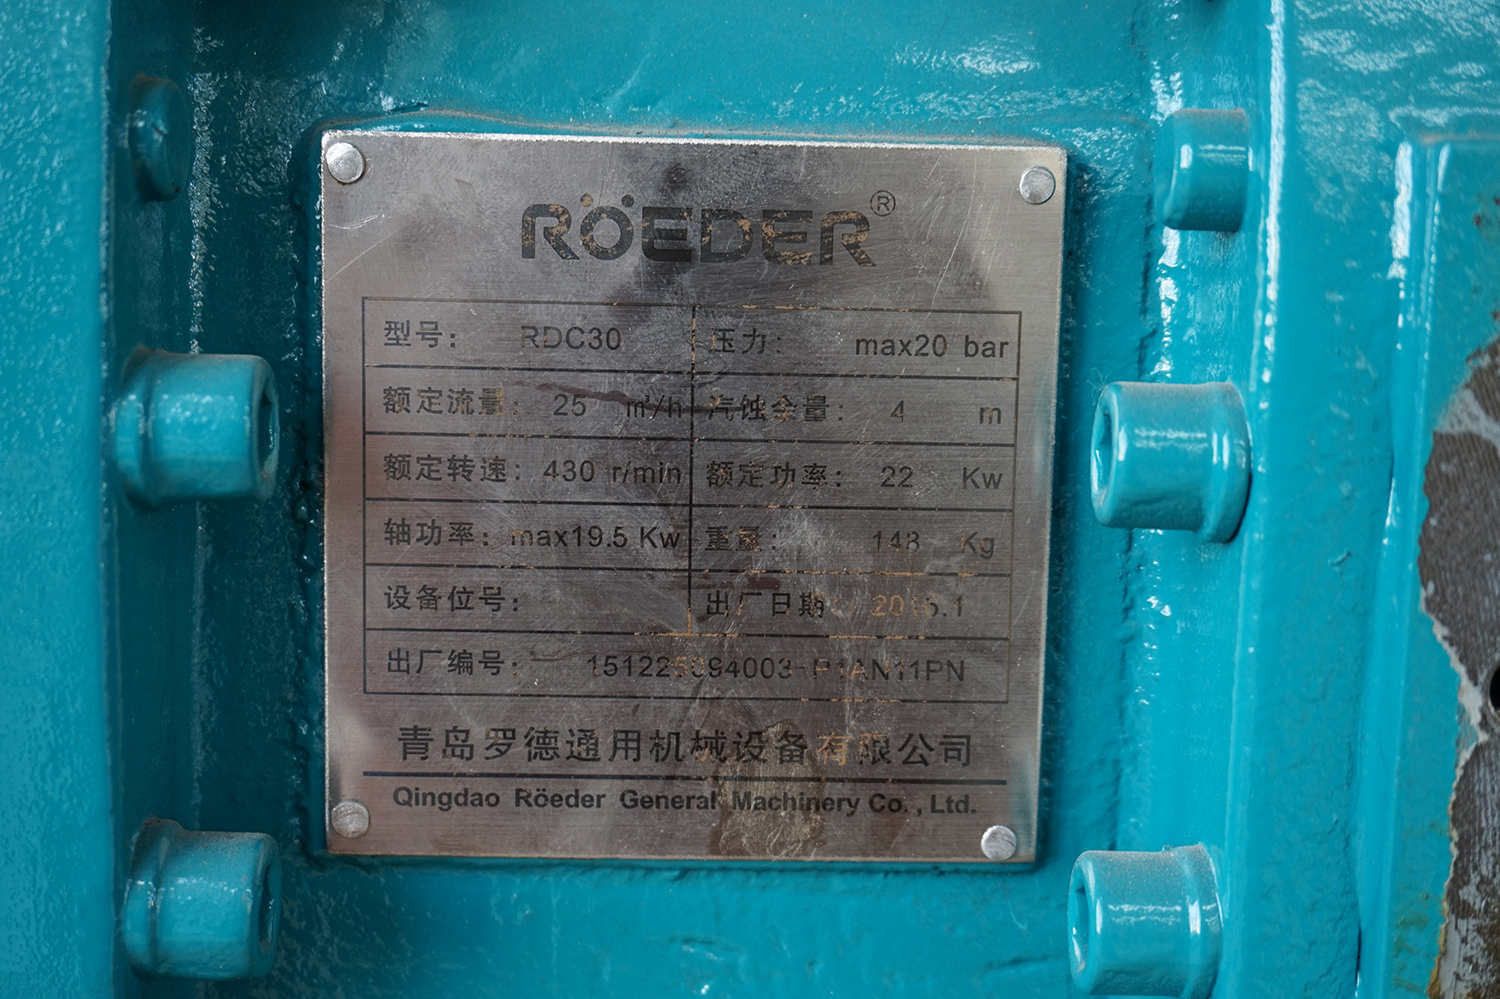 罗德RDC30型转子泵铭牌特写